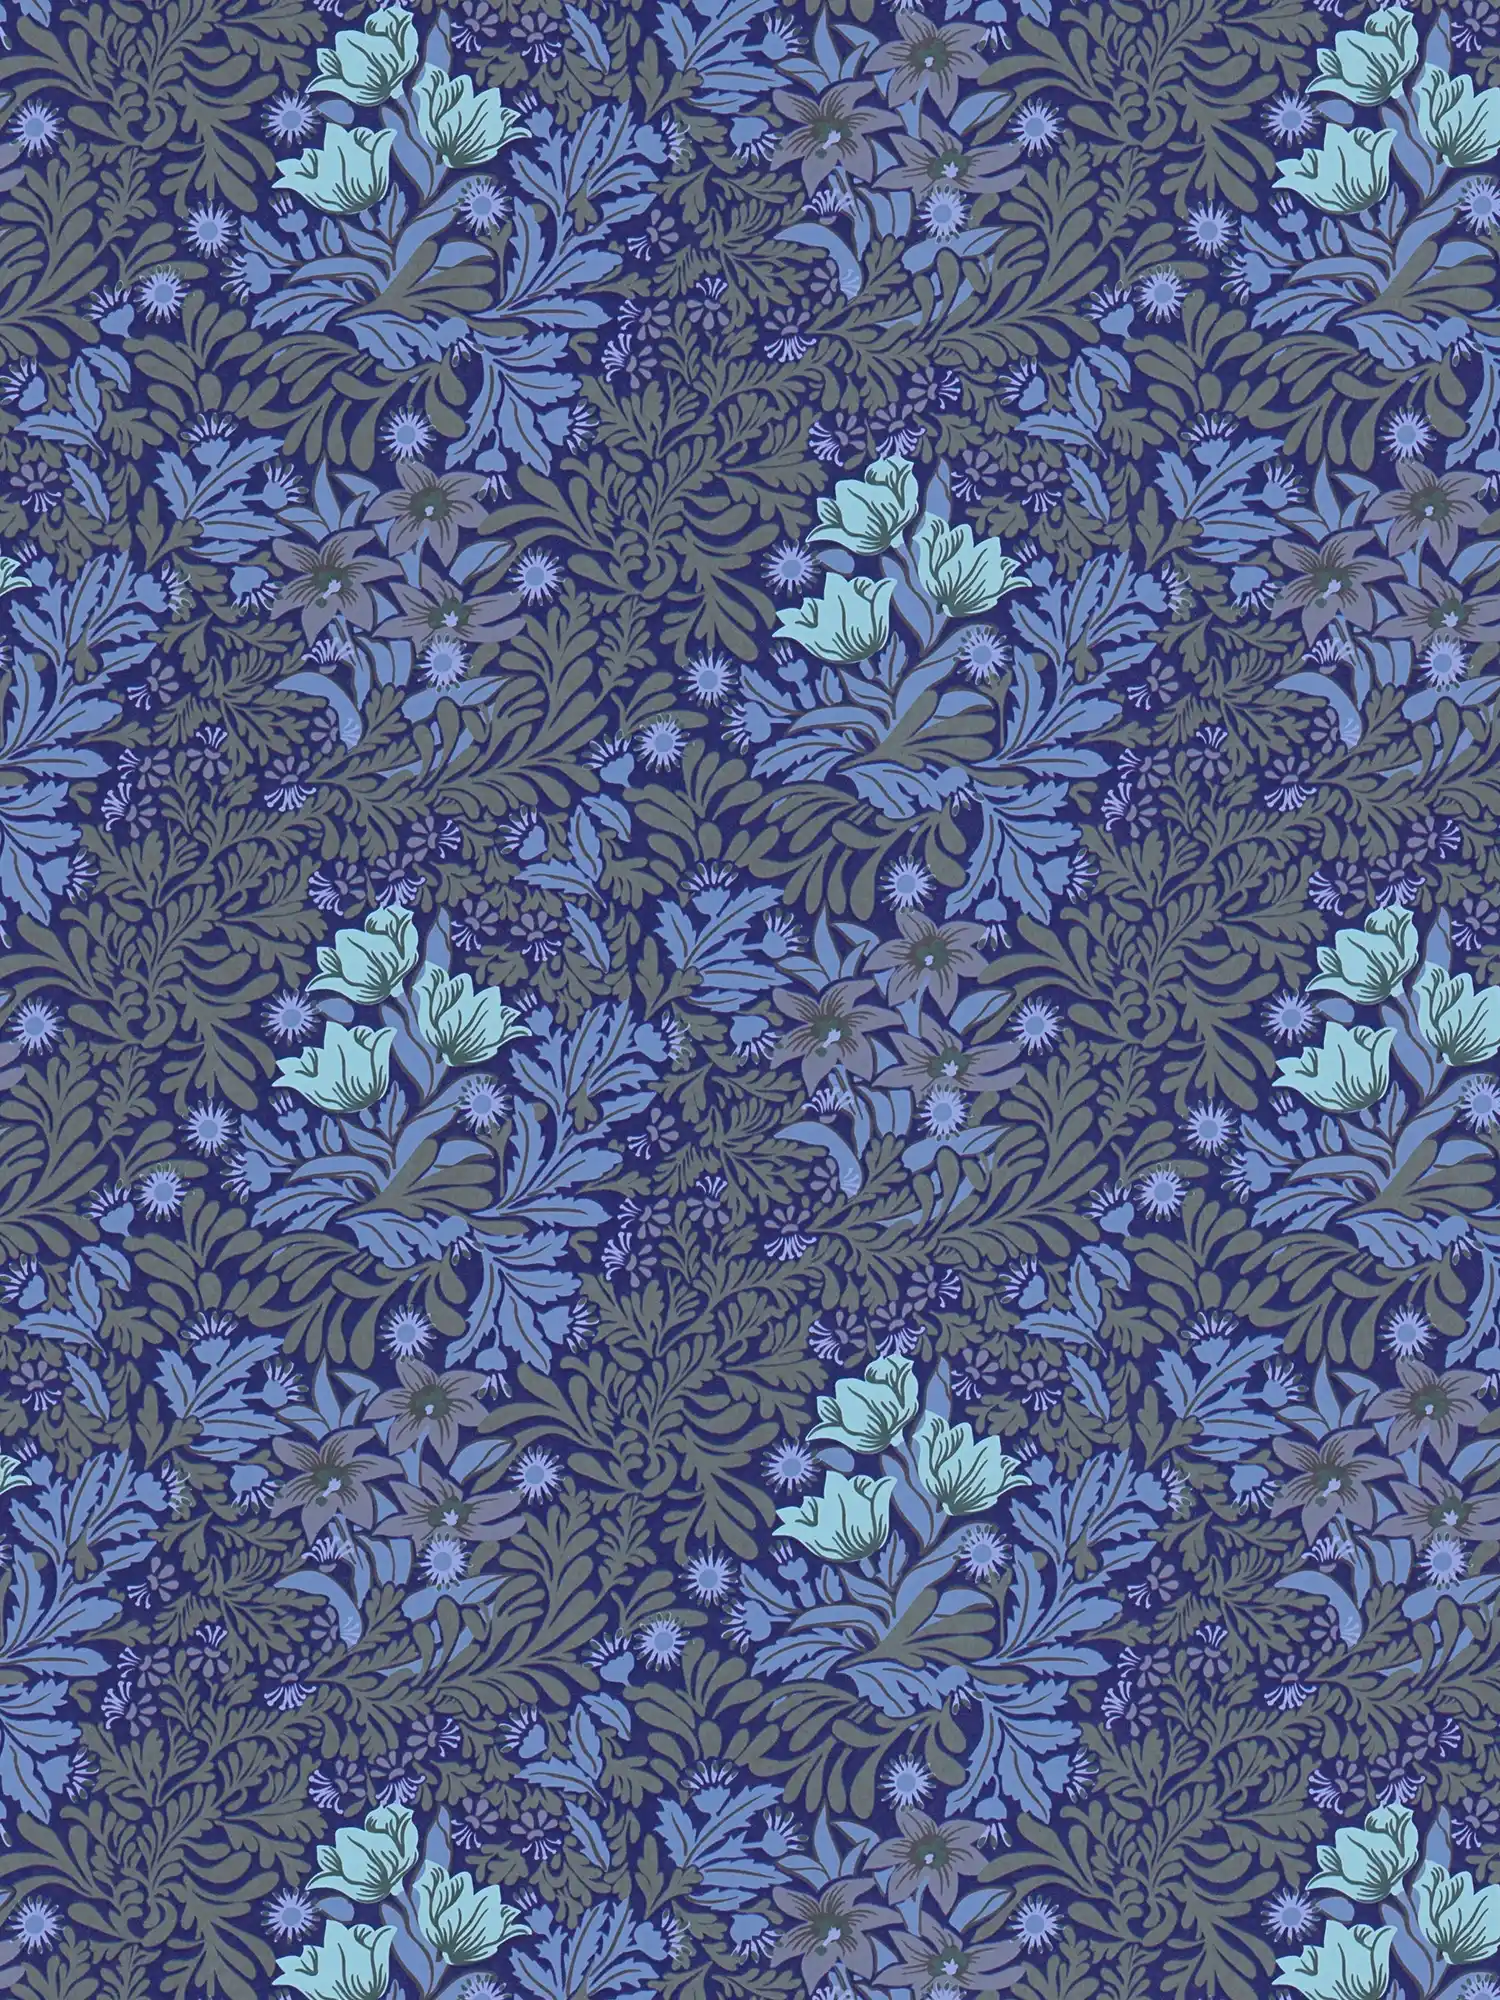 Floral Vliestapete mit Blätterranken und Blüten – Blau, Grau, Grün
